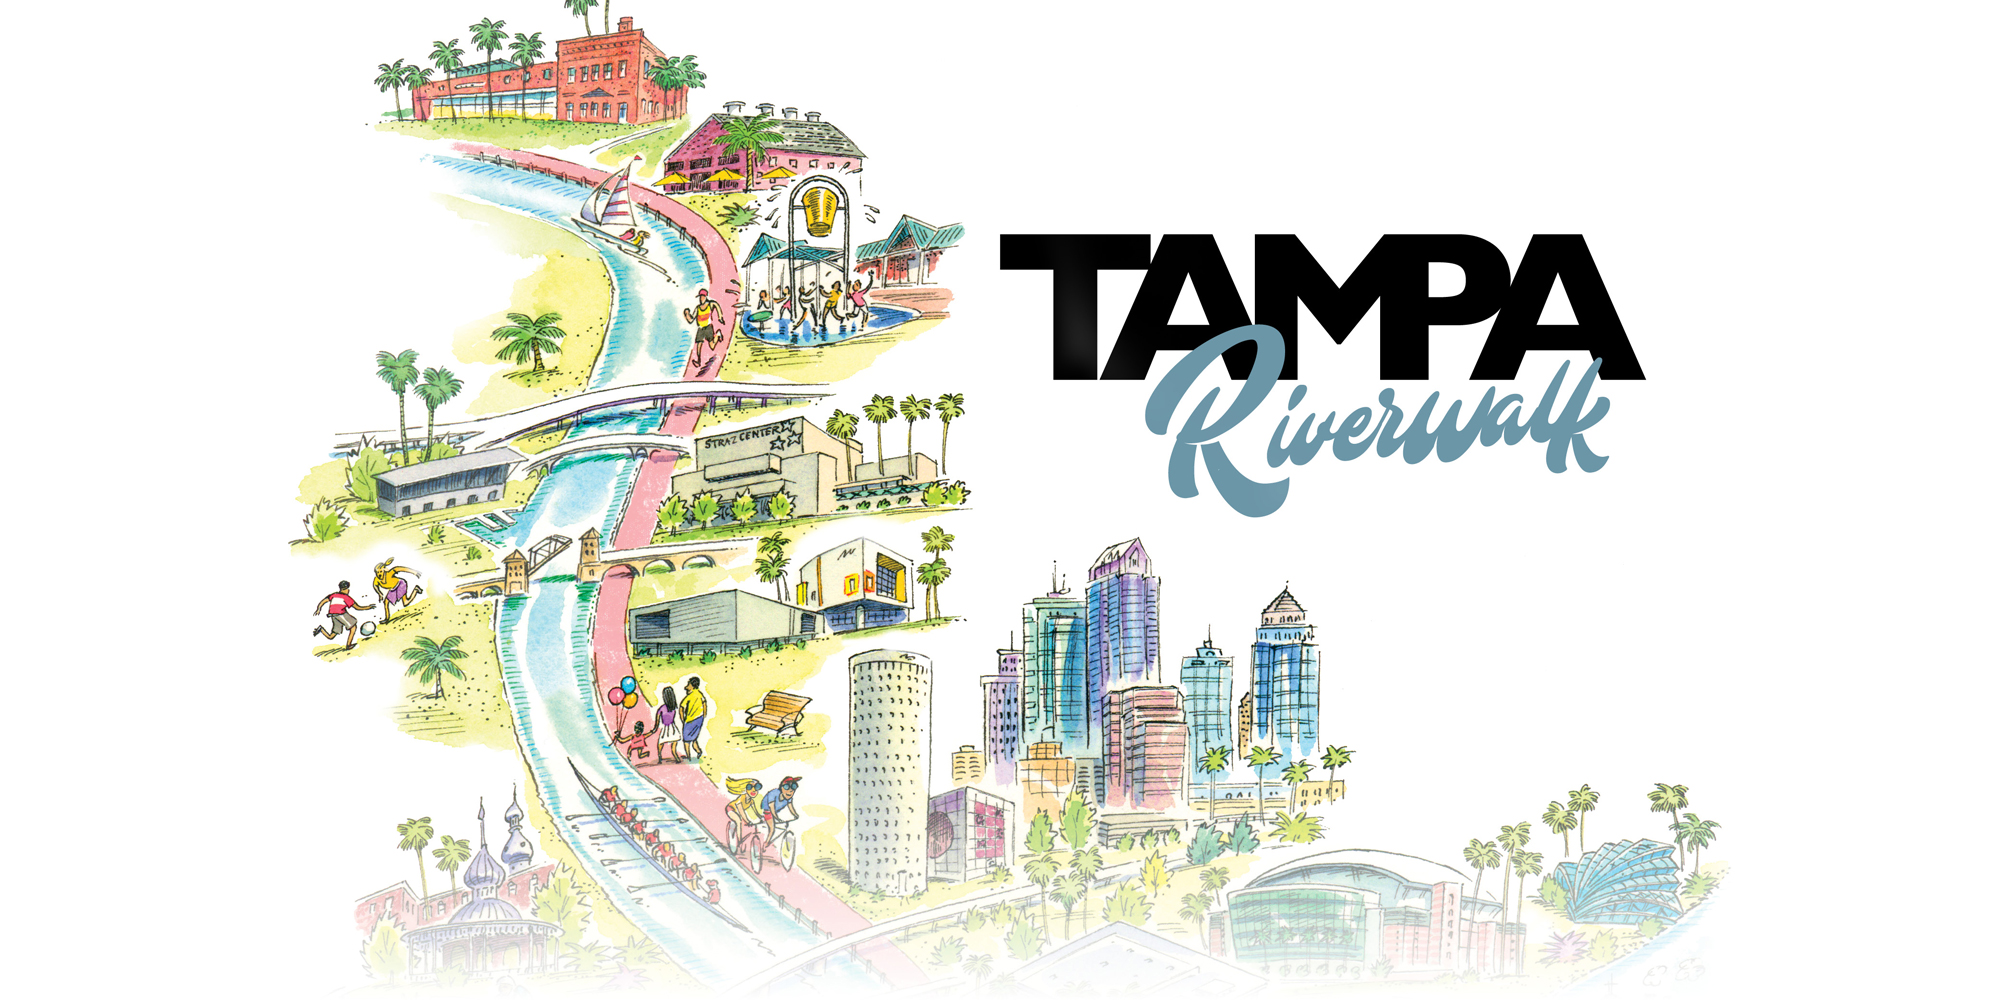 TampaRiverwalk Featured Image 